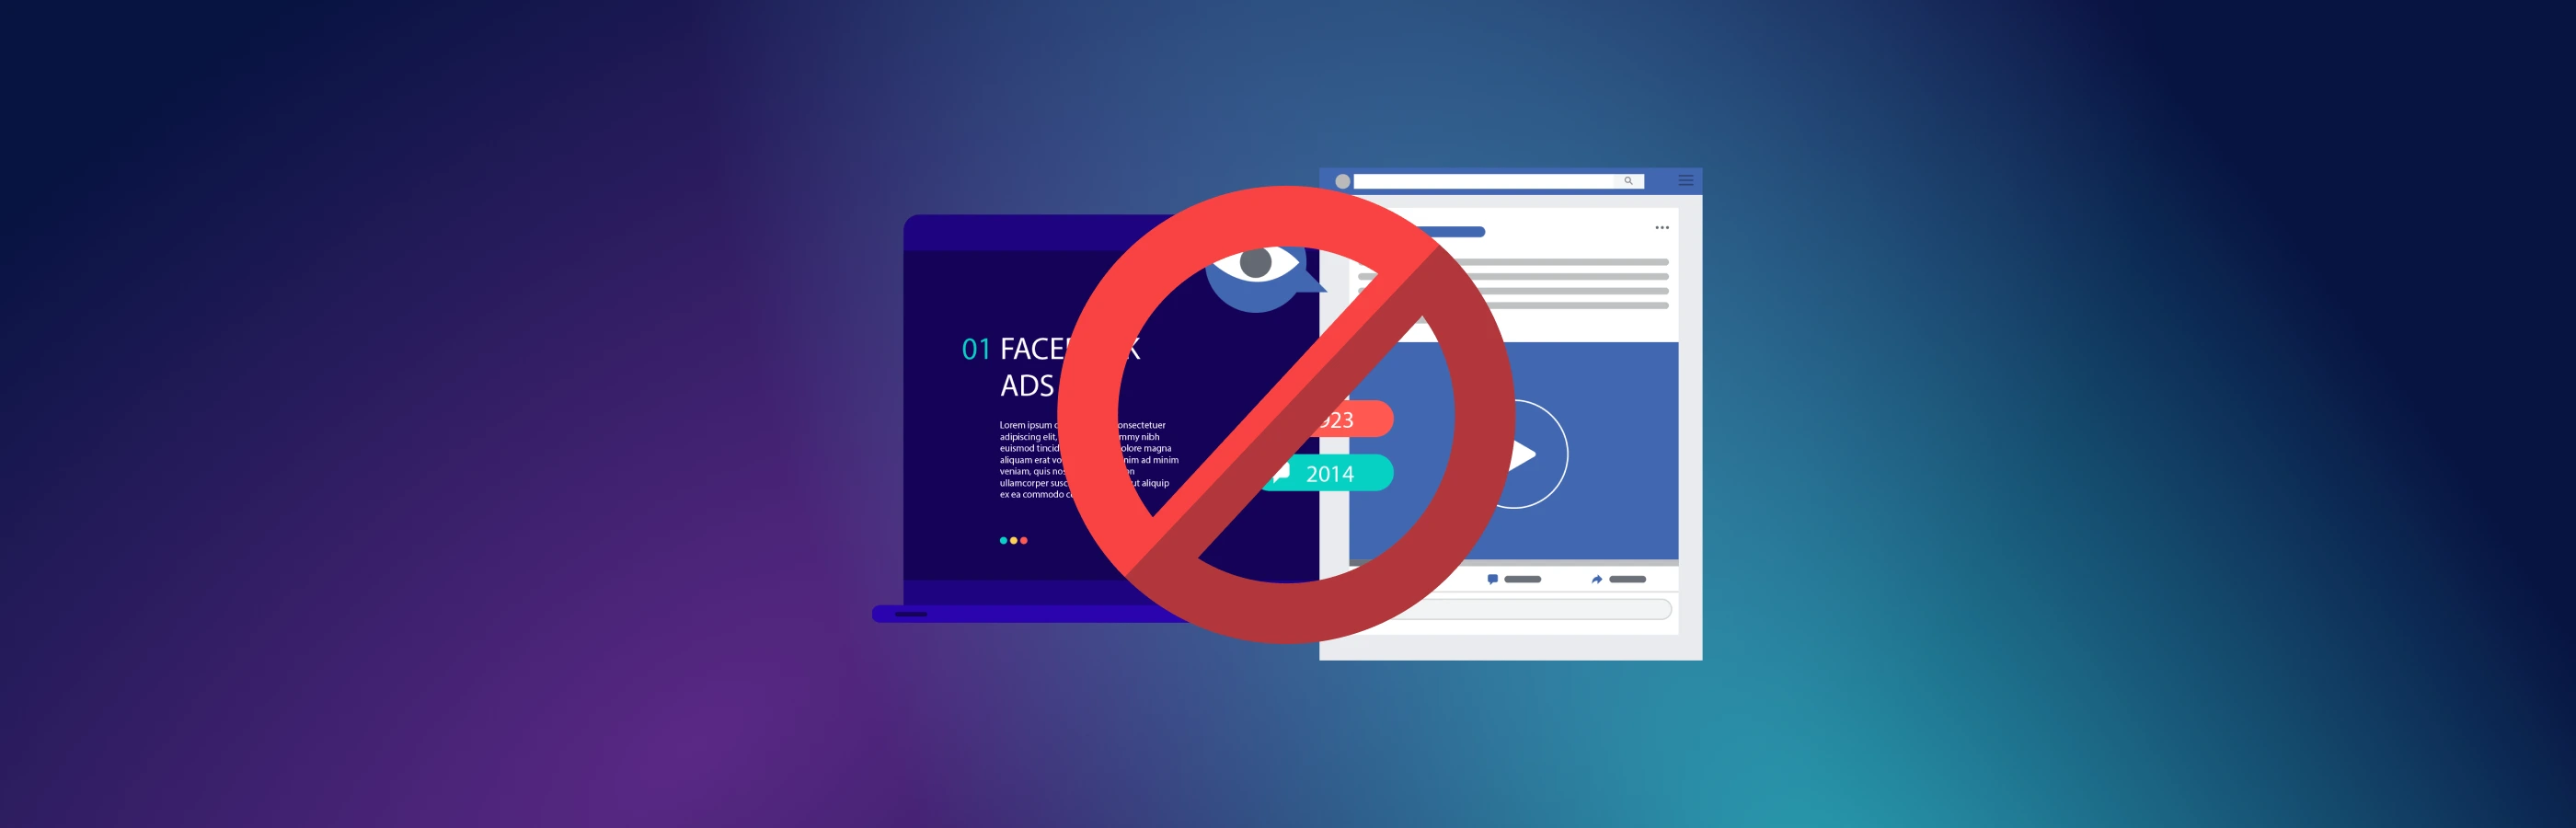 Từ khóa cấm trên Facebook: cách tránh bị chặn và tăng cường hồ sơ